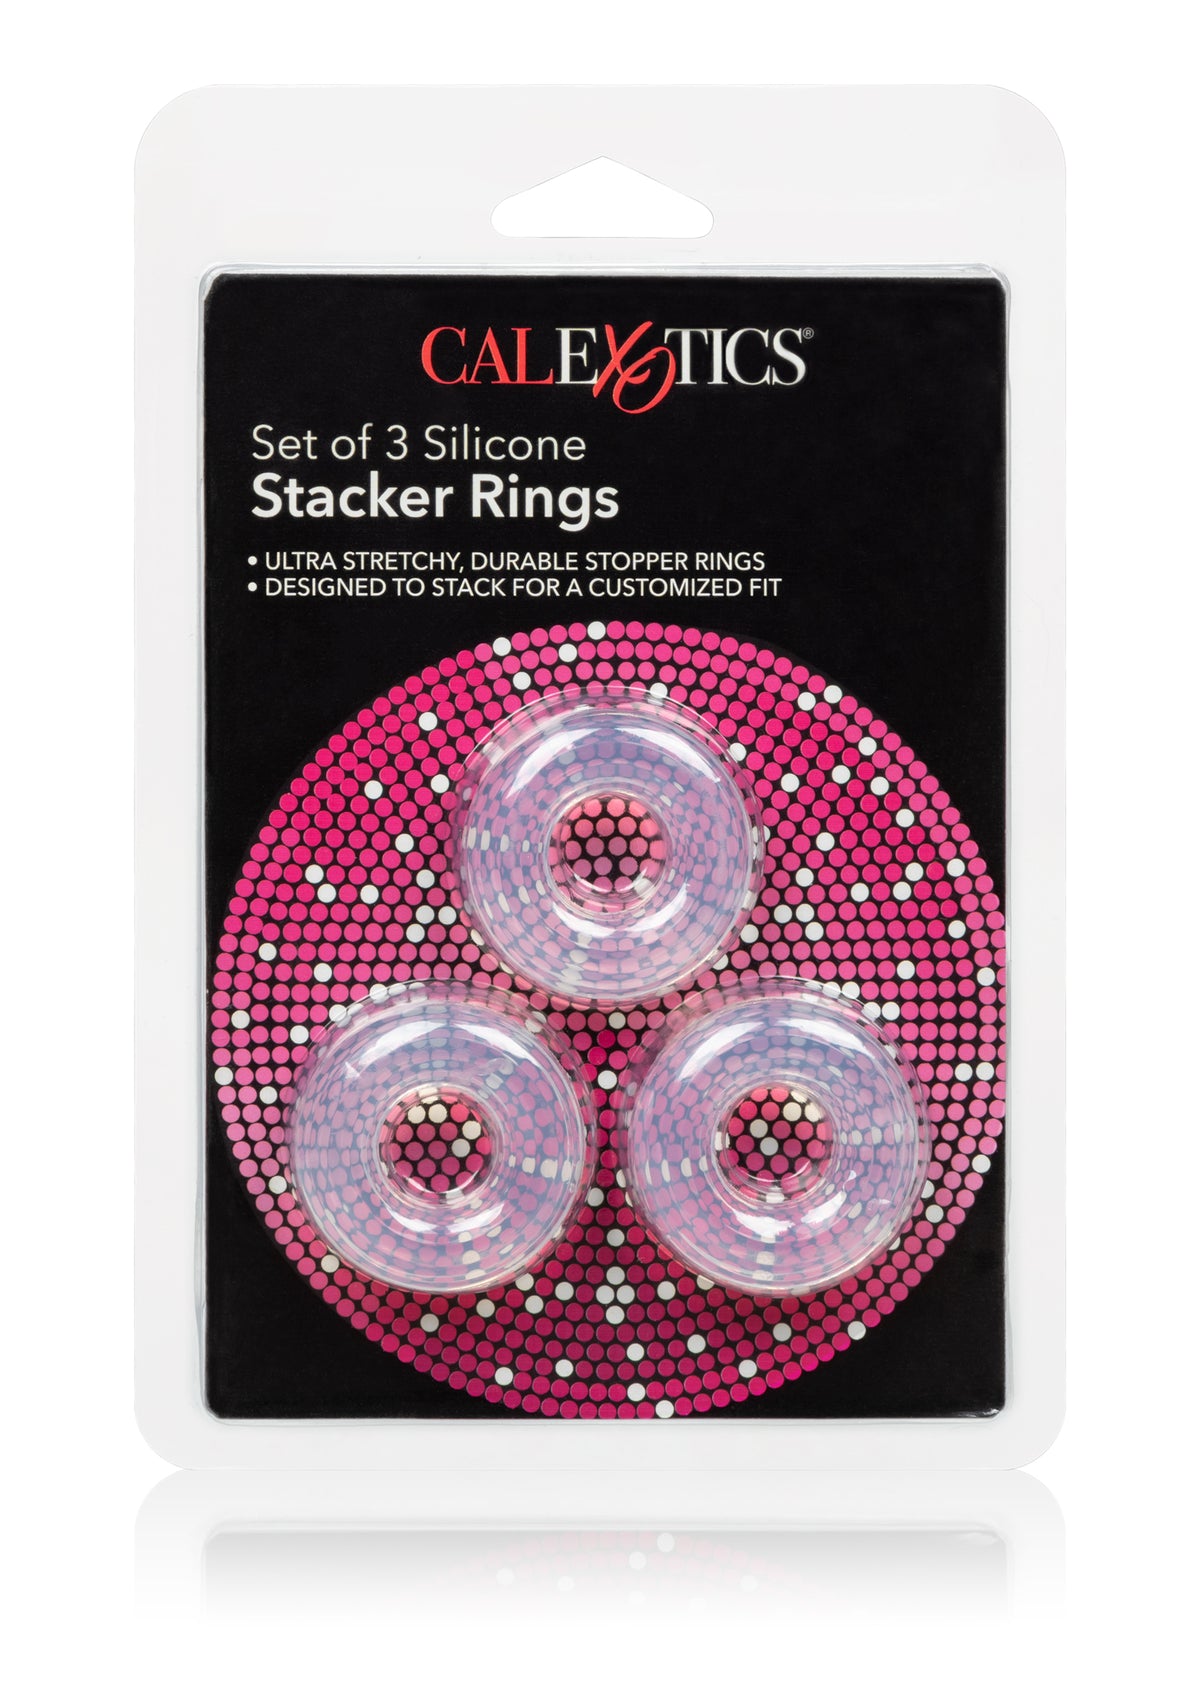 3 Stacker Rings